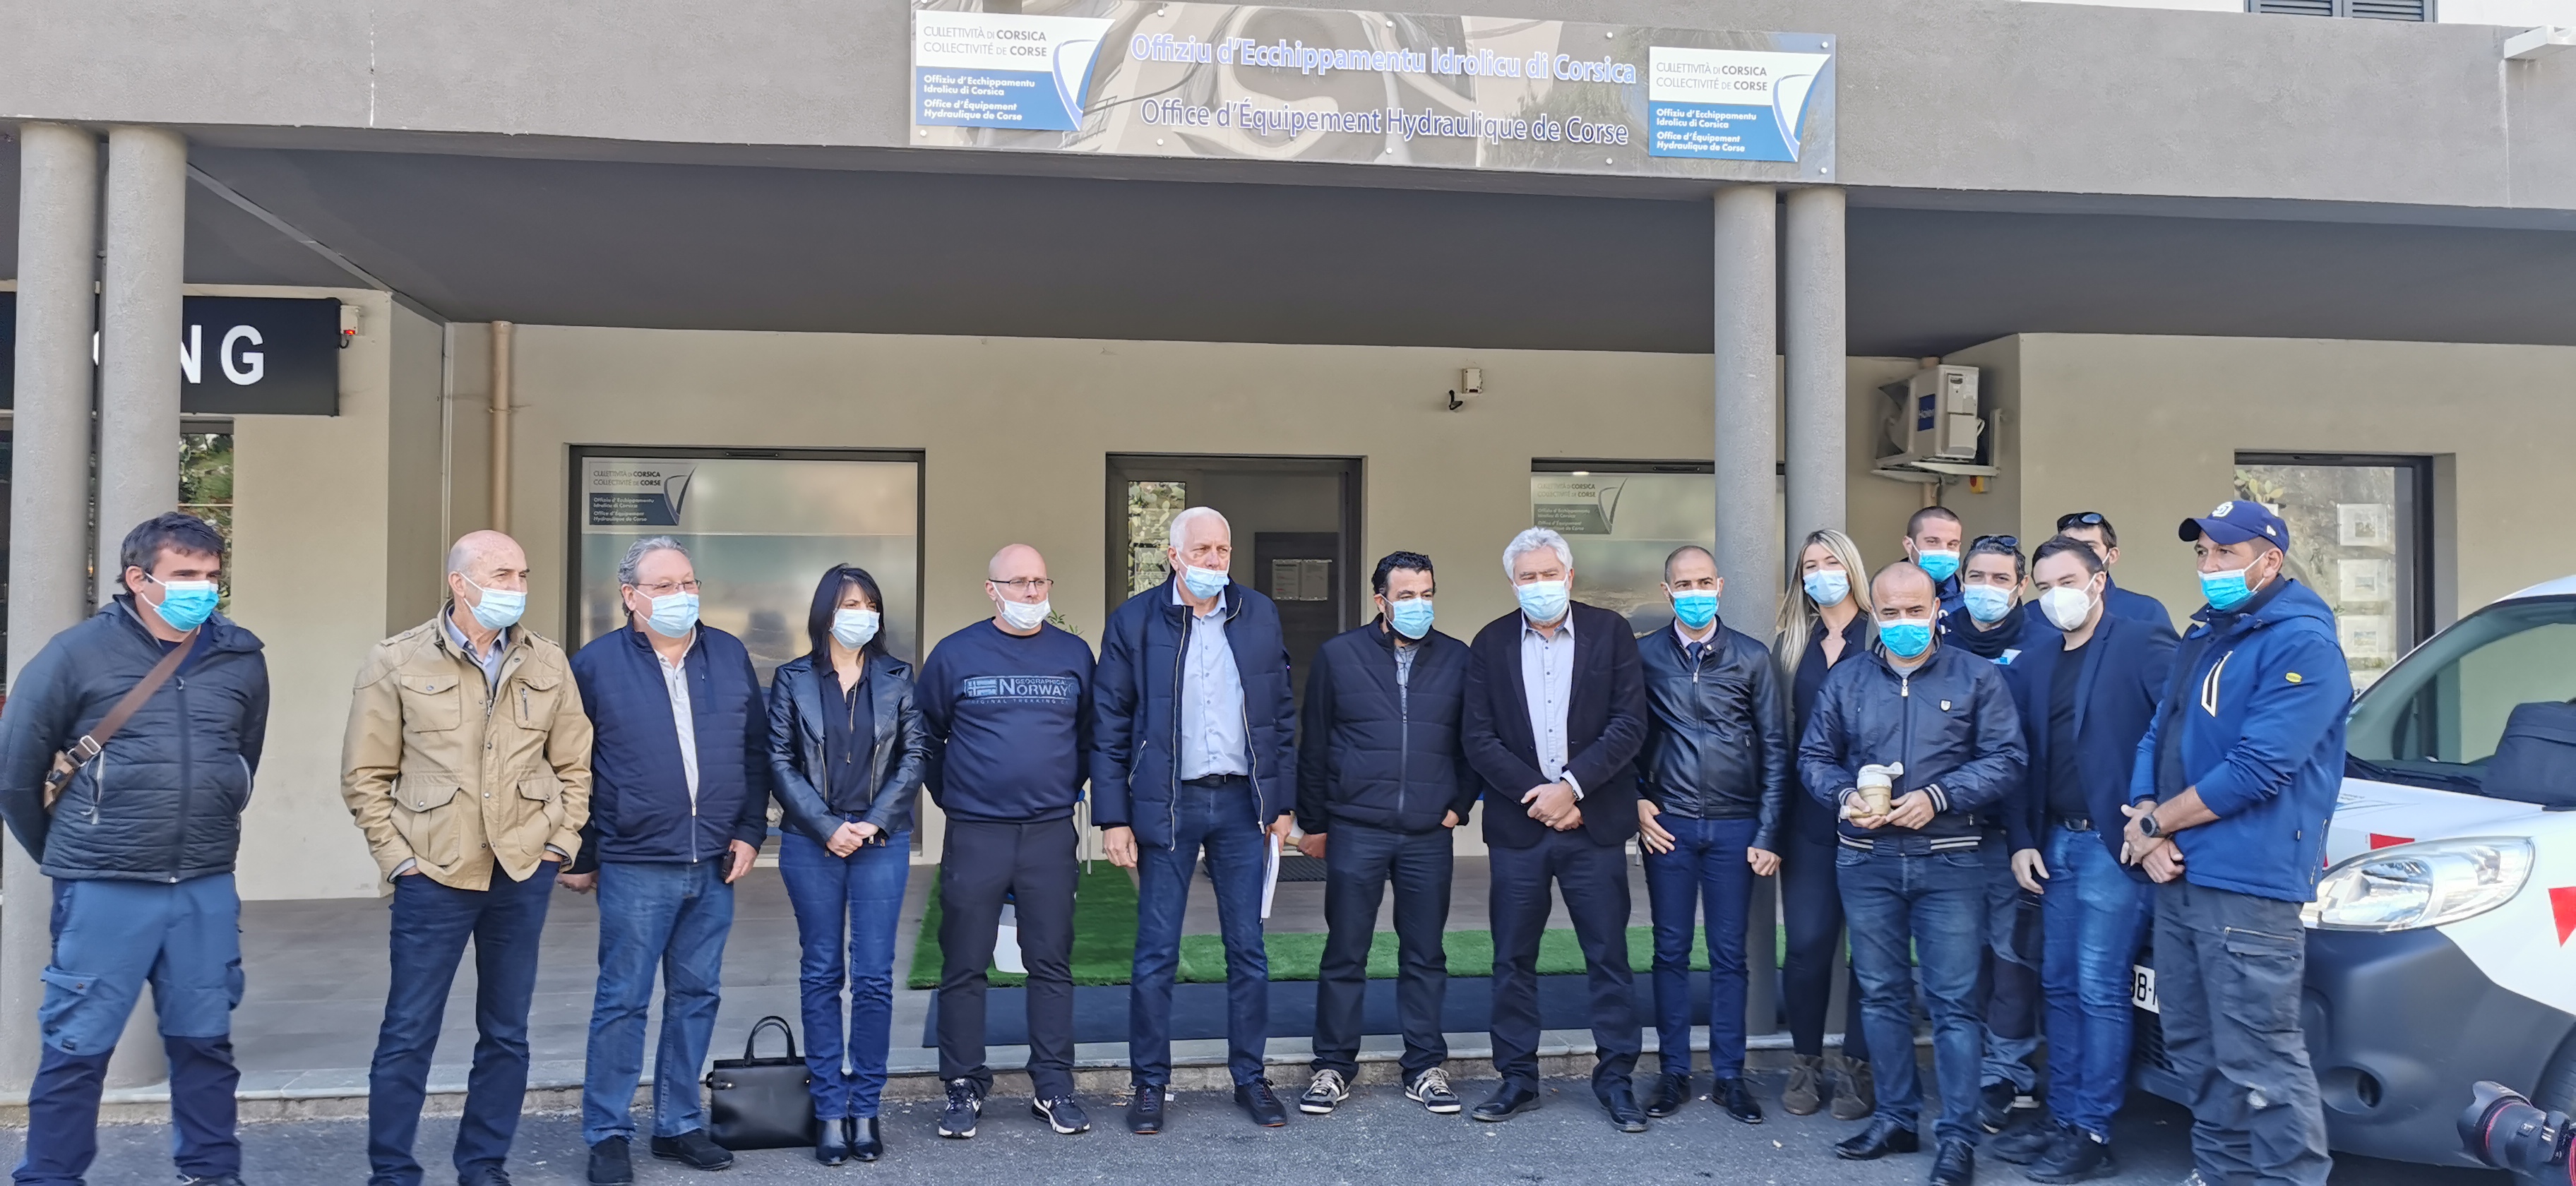 Le président de l’Office d’équipement hydraulique de la Corse (OEHC), Saveriu Luciani, entouré des représentants de la ComCom Lisula Balagna.